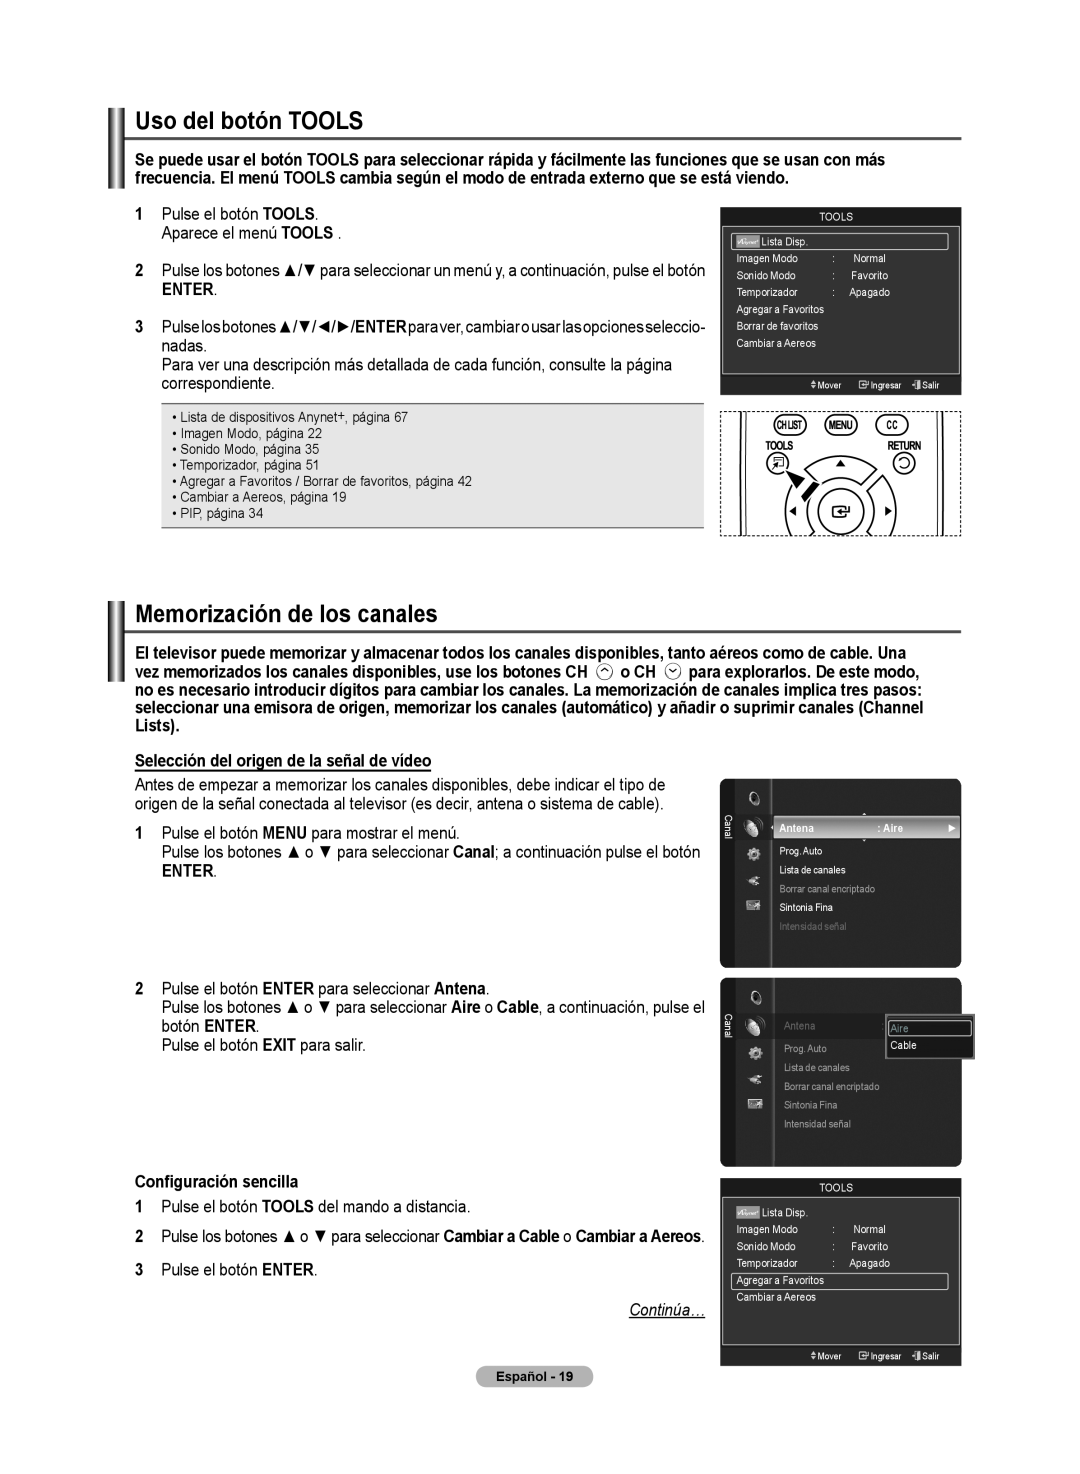 Samsung 510 user manual Enter, Selección del origen de la señal de vídeo, Configuración sencillla, Continúa…, Español 